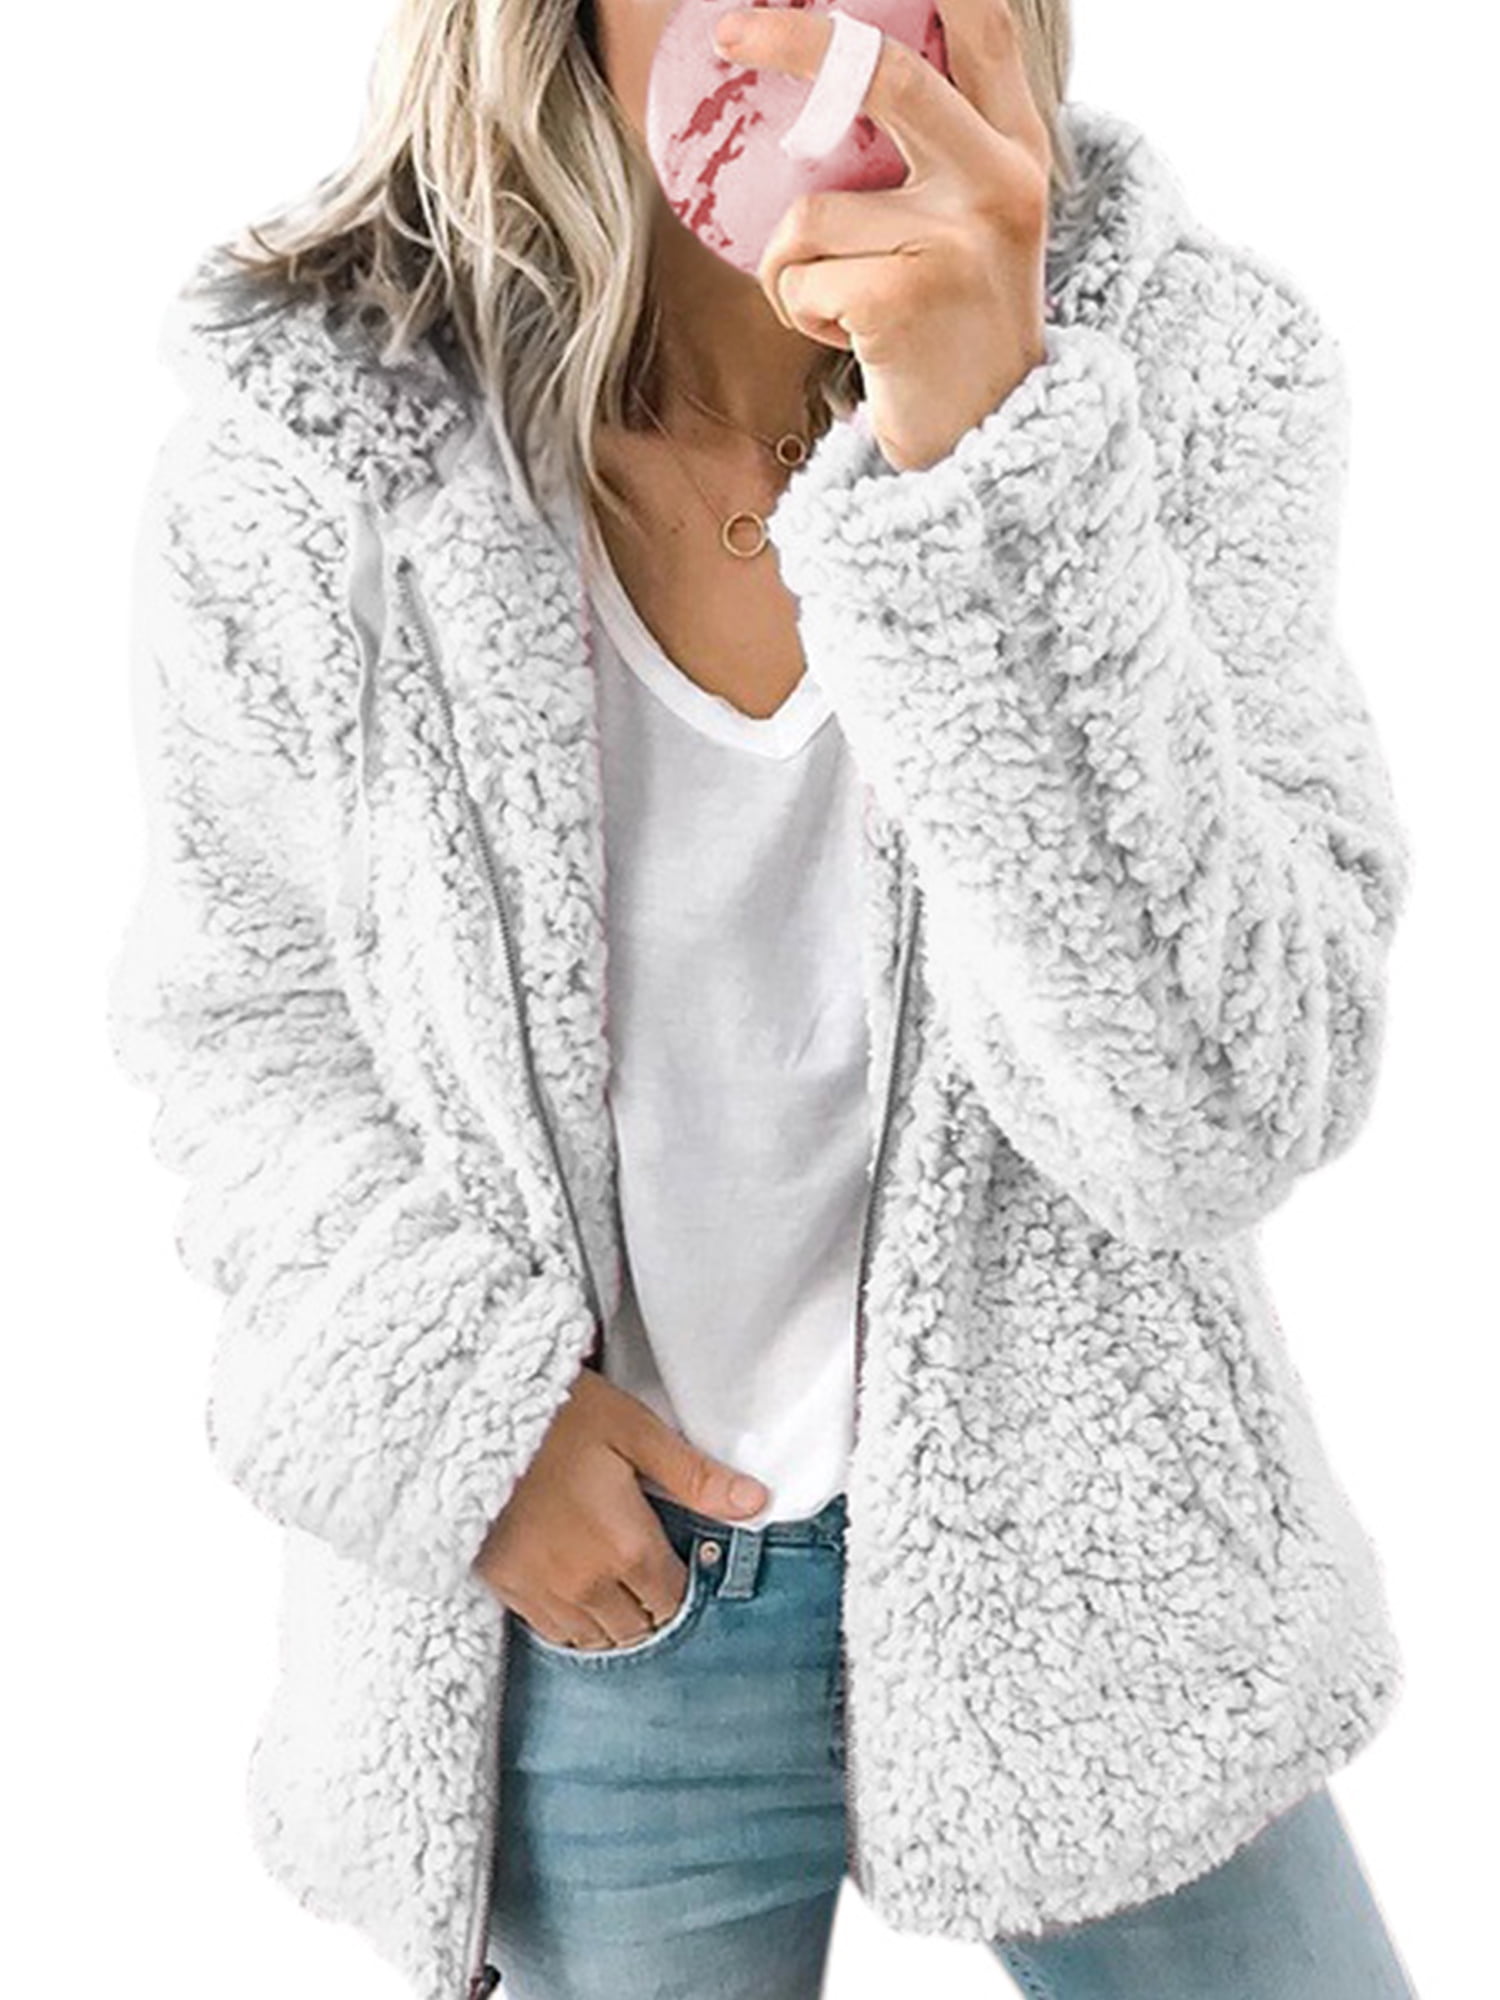 Fashion Women's Fleece Fur Jacket Outerwear Tops Winter Warm Hooded Fluffy Coat